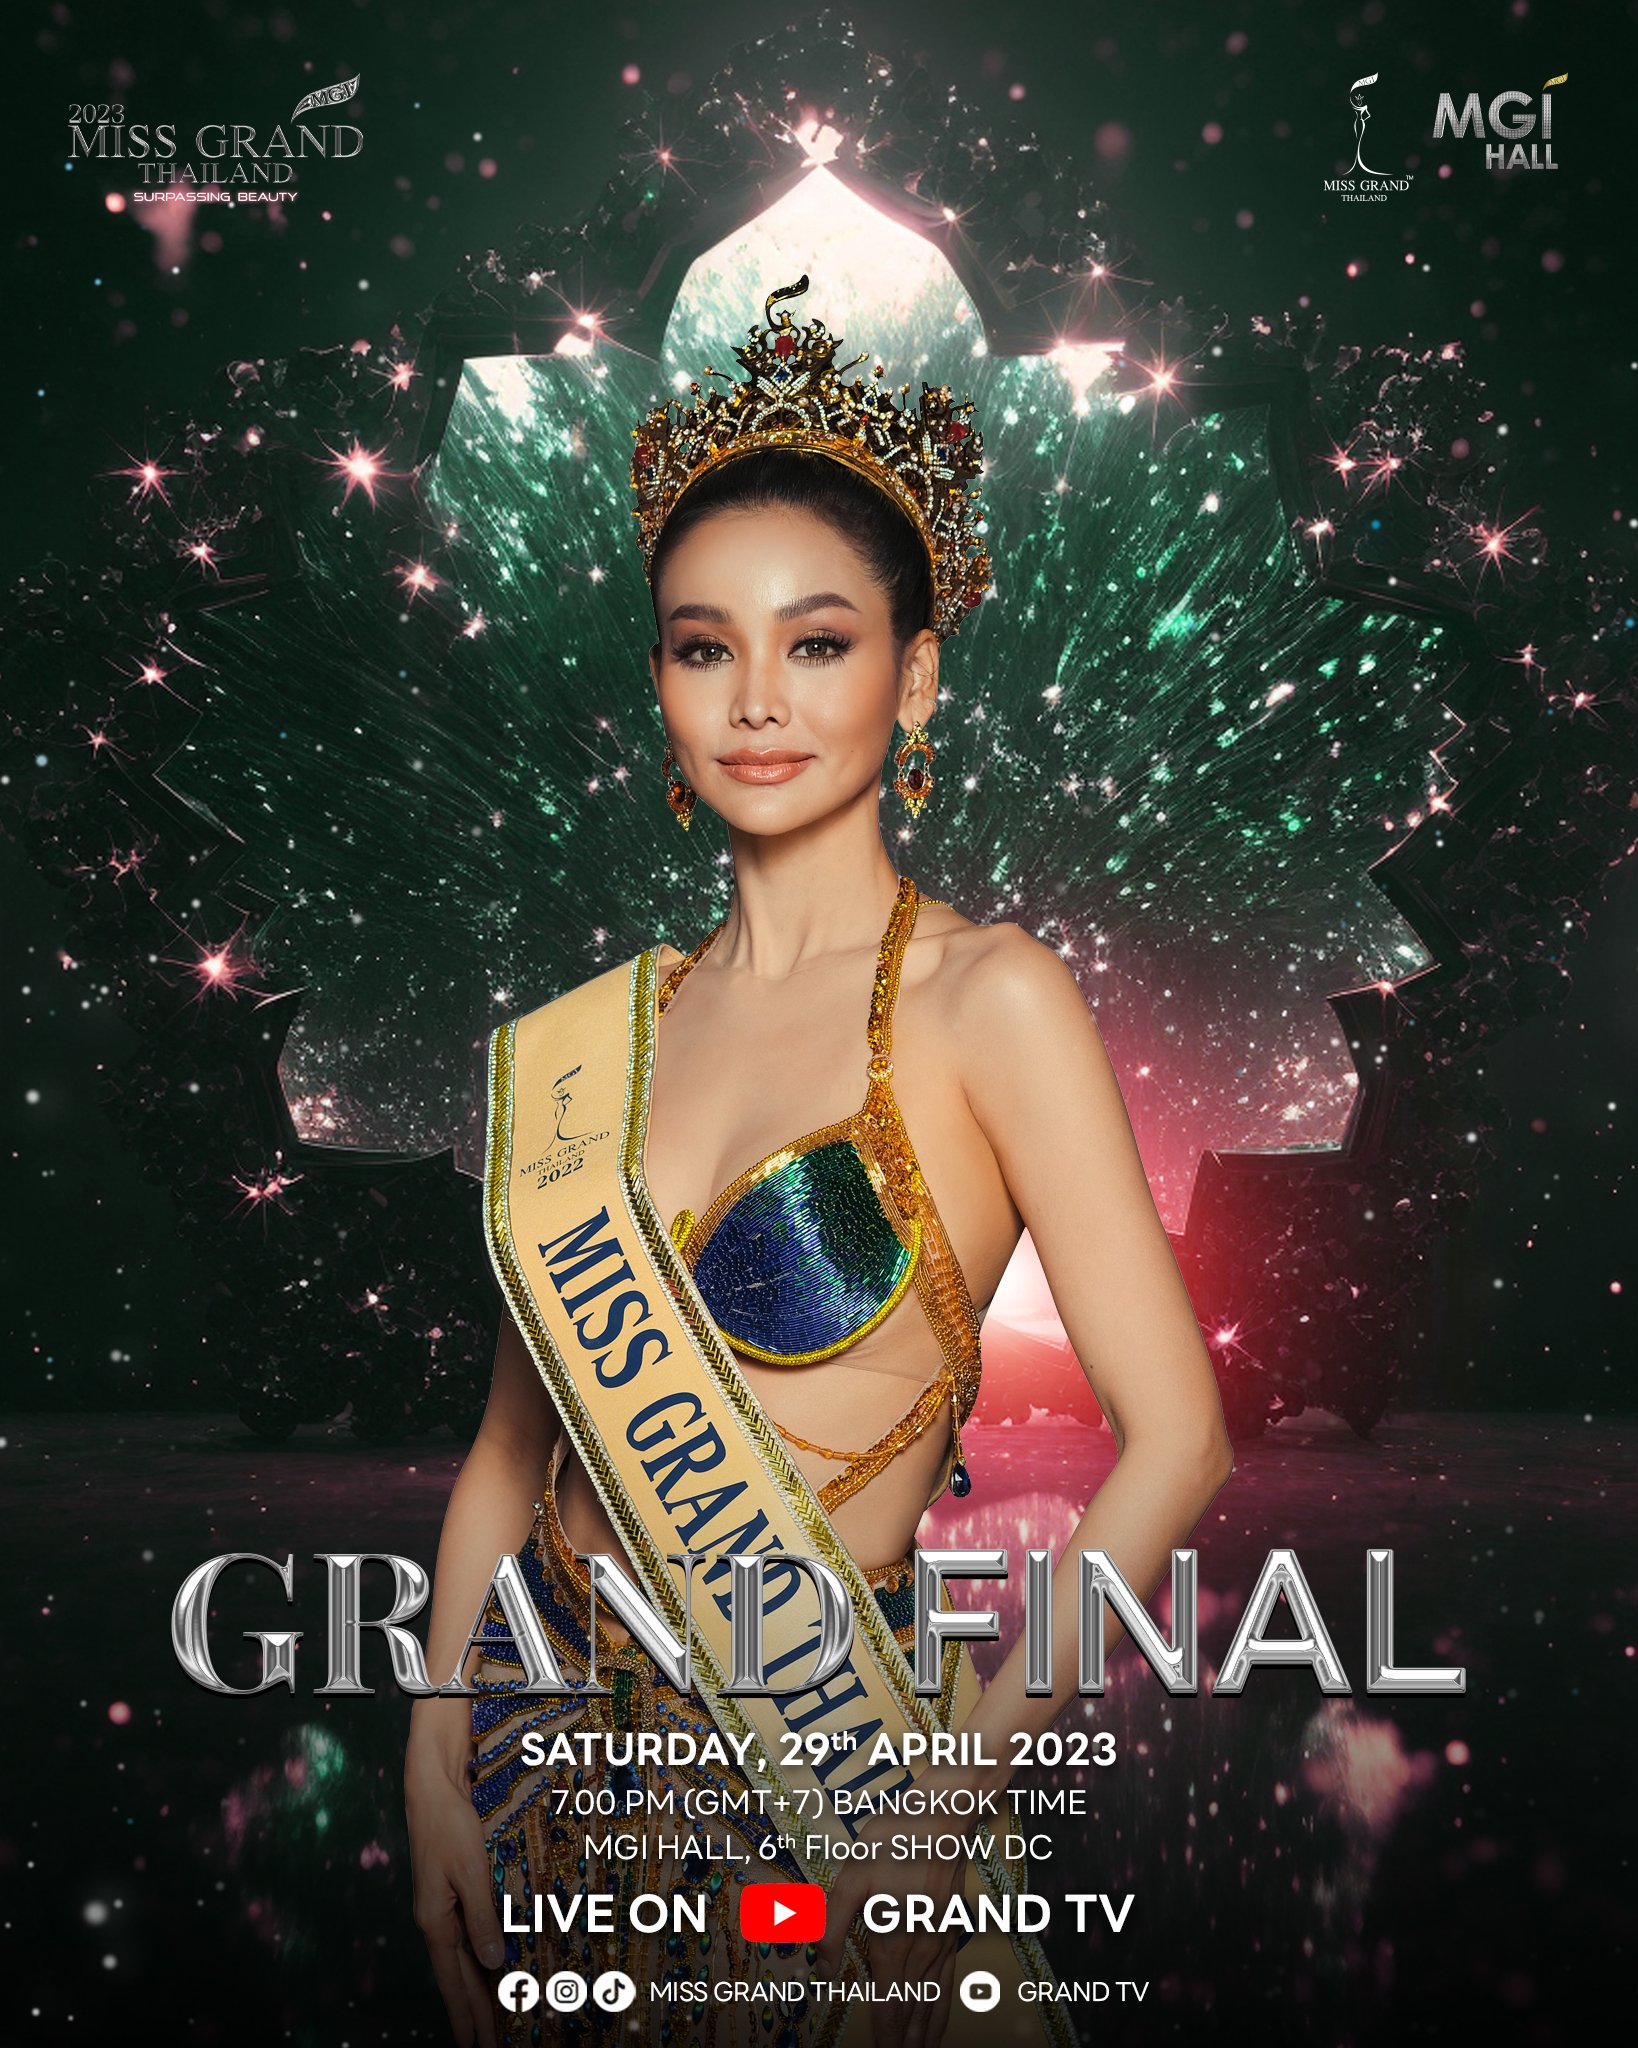 Miss Grand Thailand 2023 ในรอบต่างๆดังต่อไปนี้ 